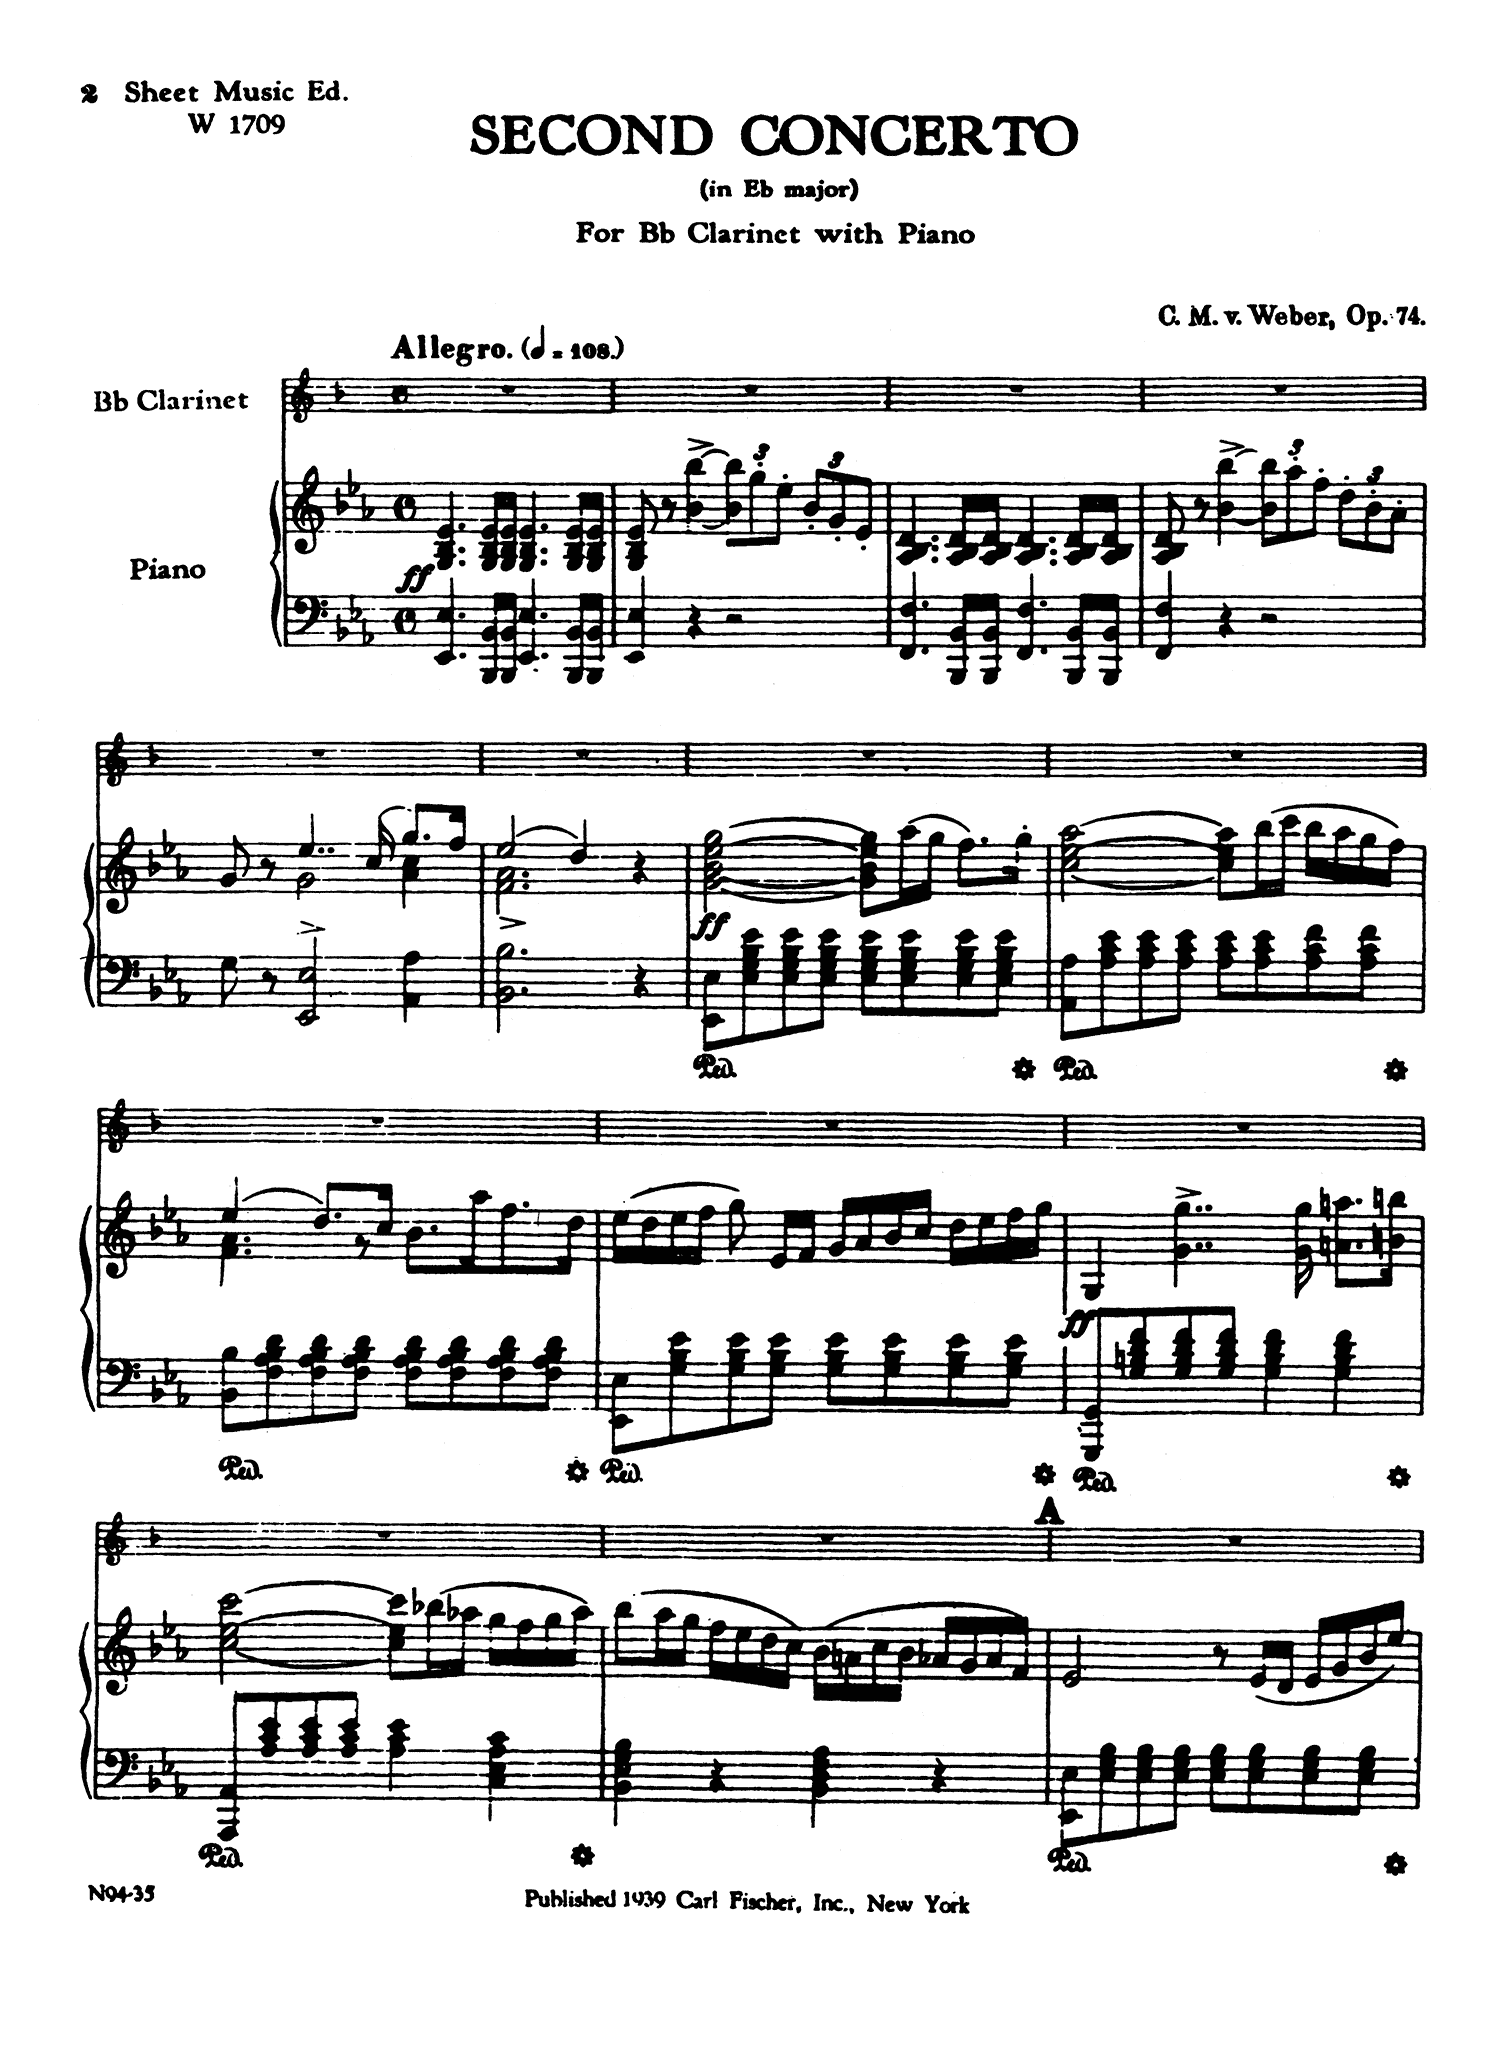 Clarinet Concerto No. 2 Op. 74 - Movement 1